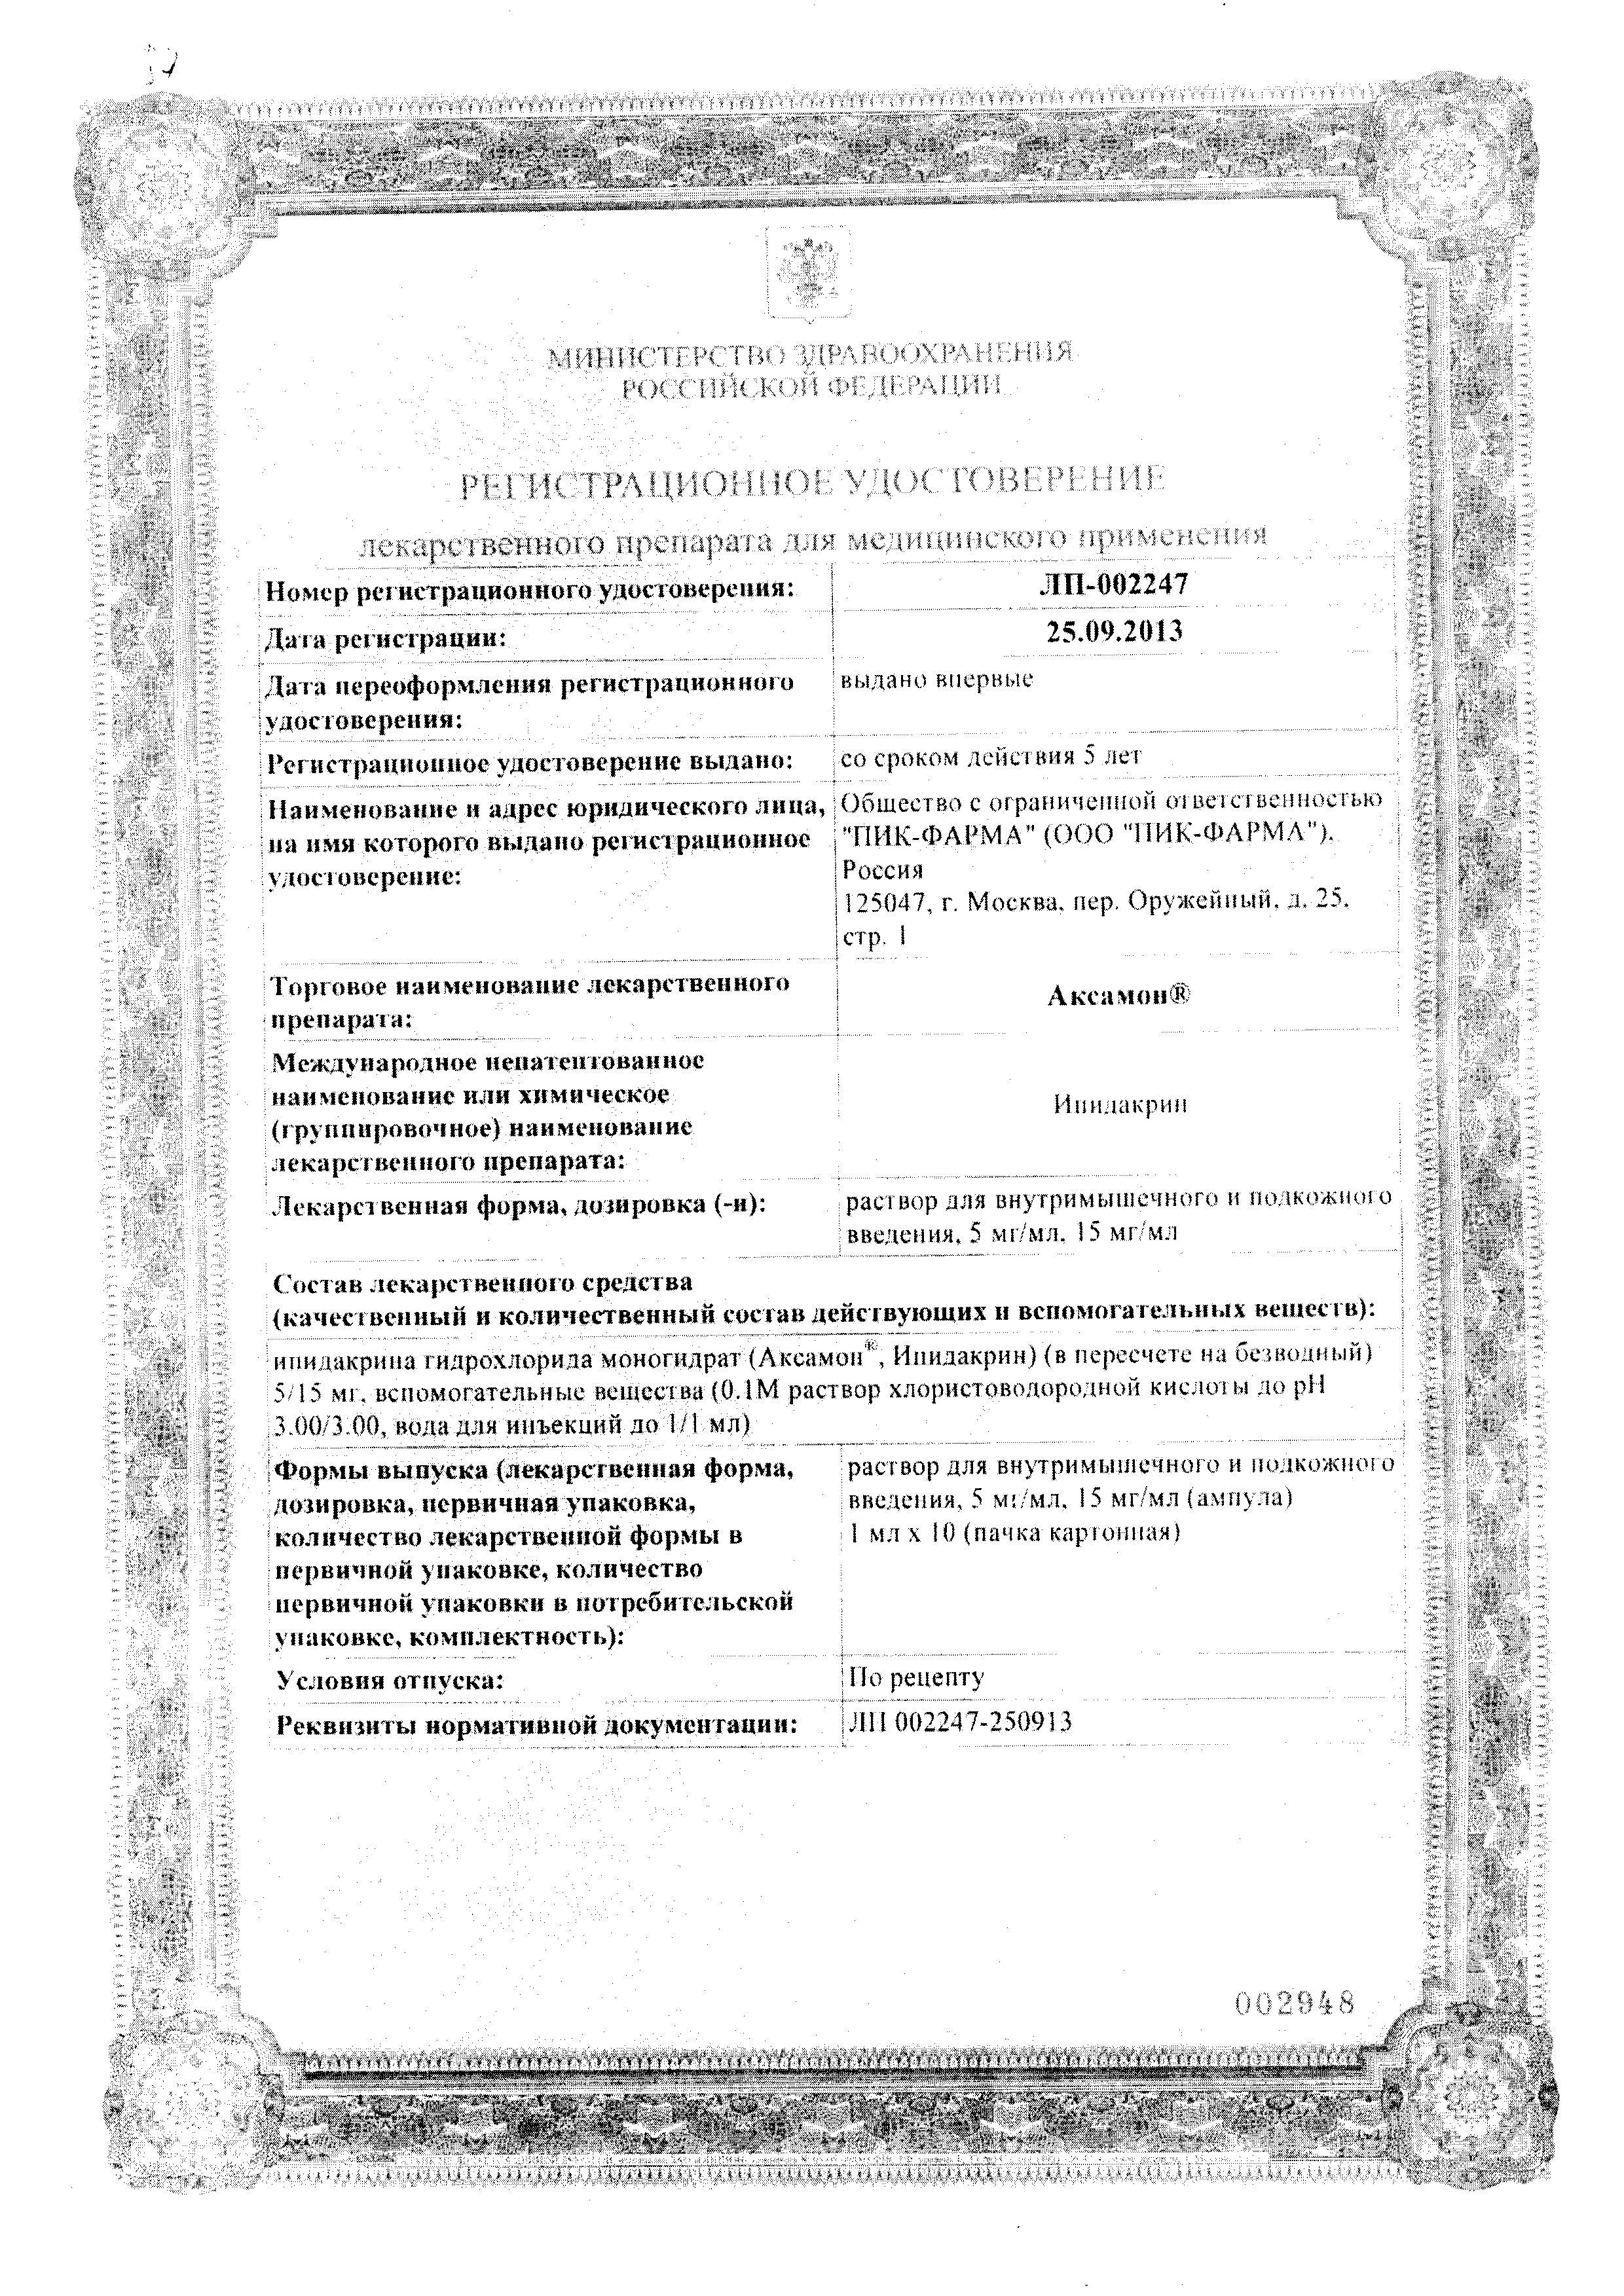 Аксамон сертификат